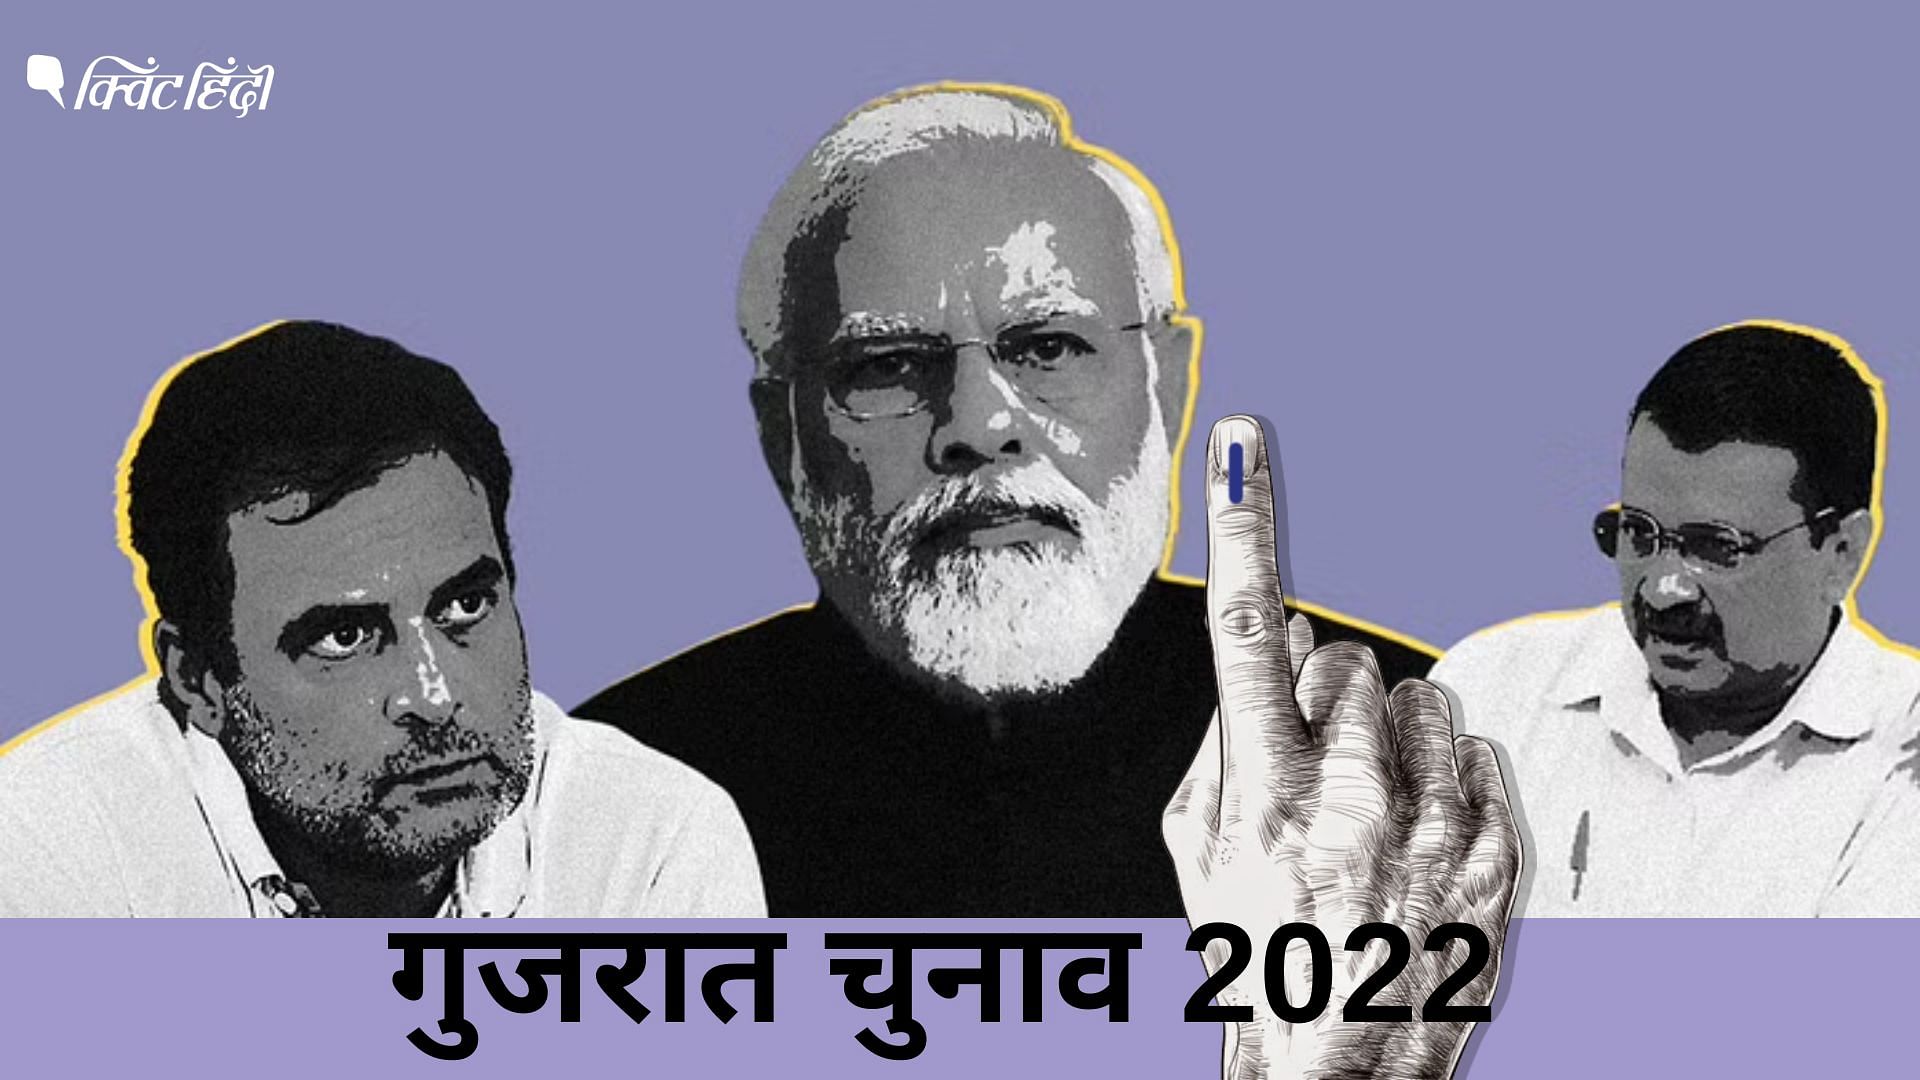 <div class="paragraphs"><p>गुजरात चुनाव 2022</p></div>